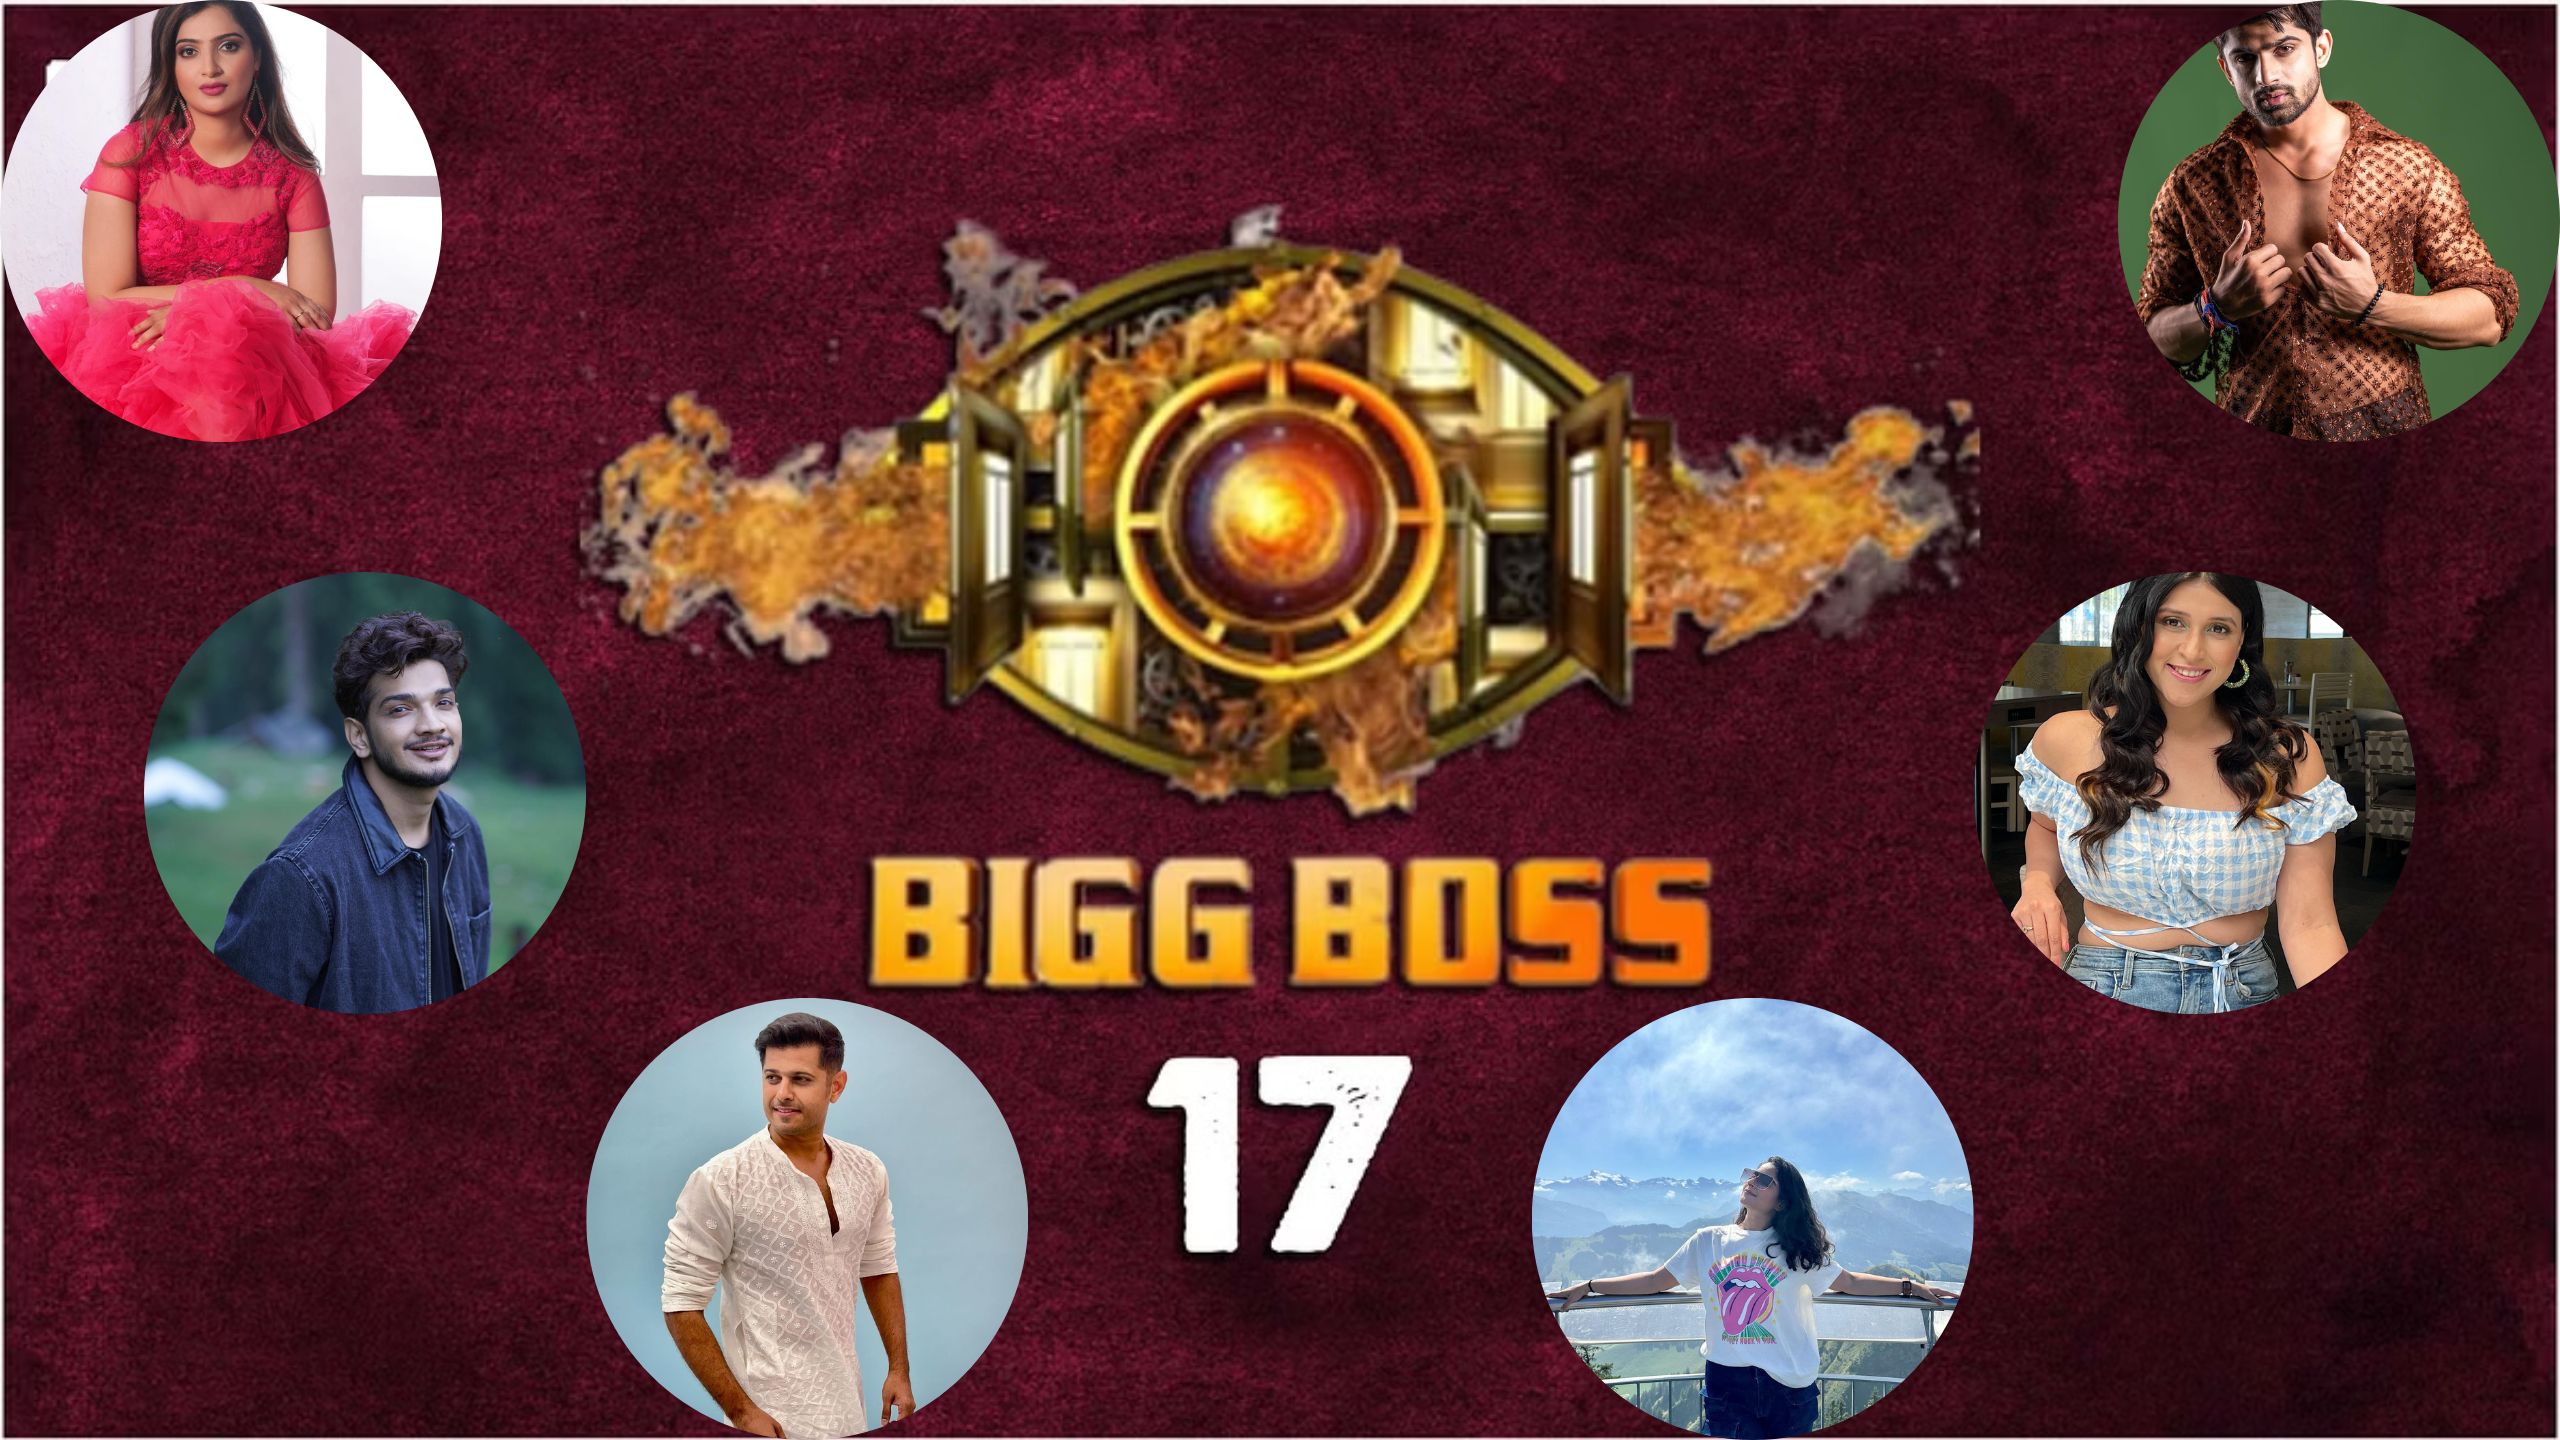 Bigg Boss 17 Live Update: जानिये कितने पढ़े लिखे है बिग बॉस 17 के प्रतियोगी